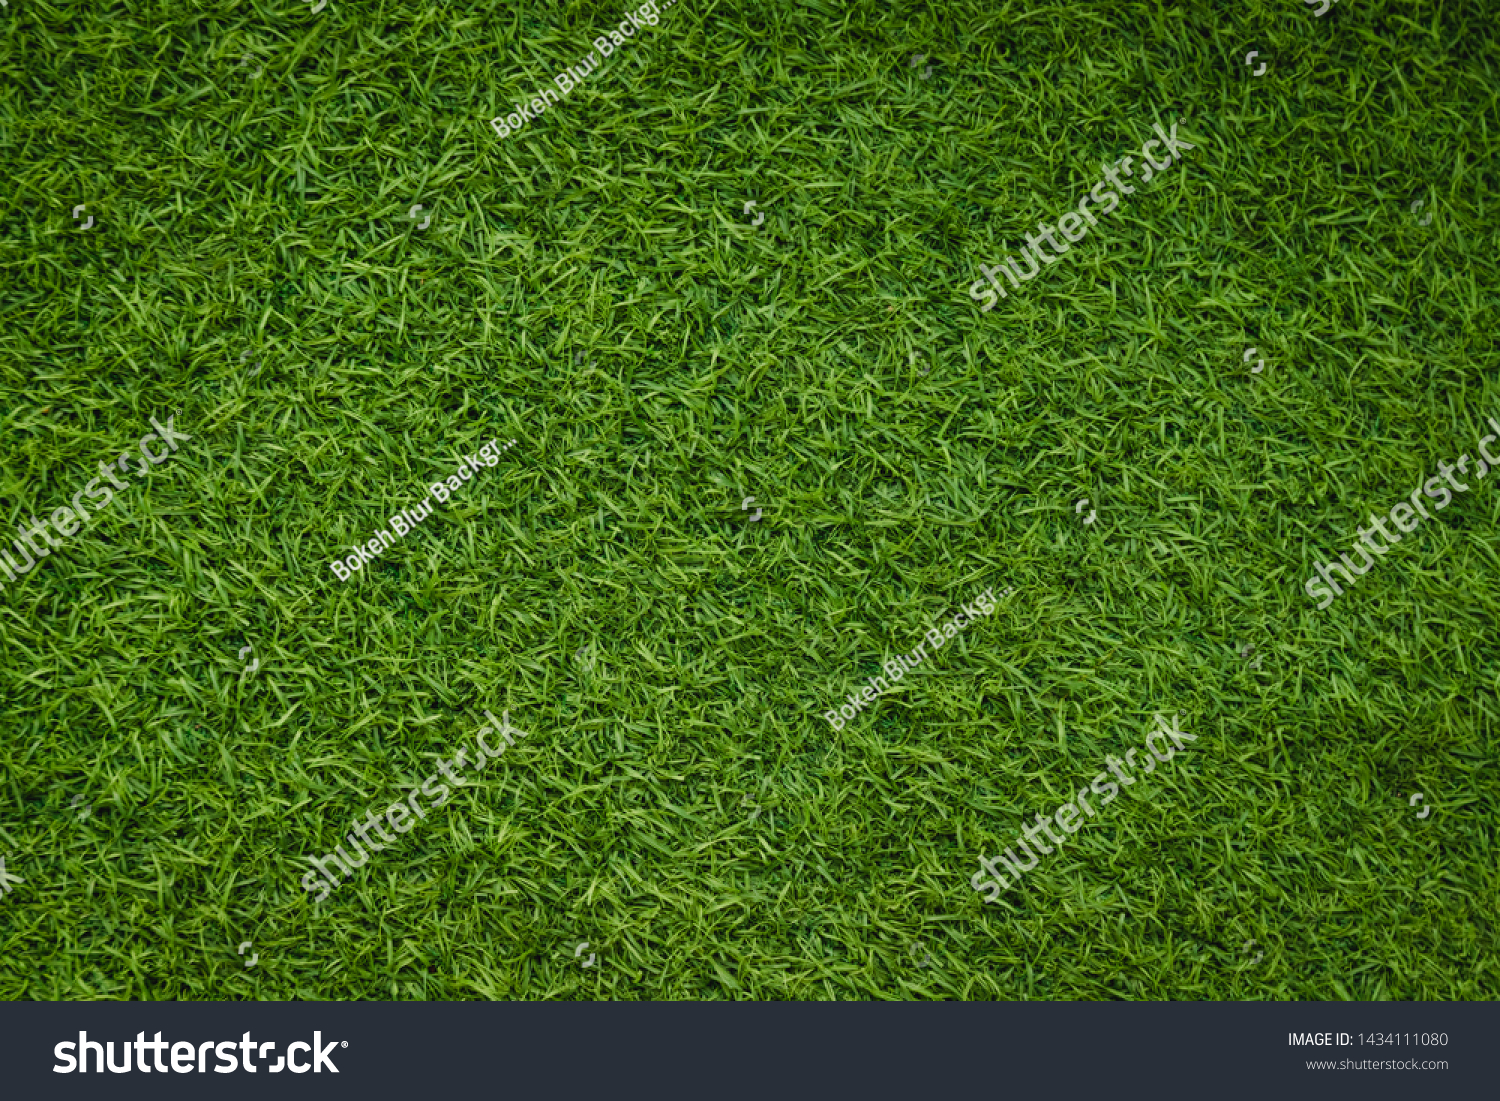 Green artificial grass natural background #1434111080